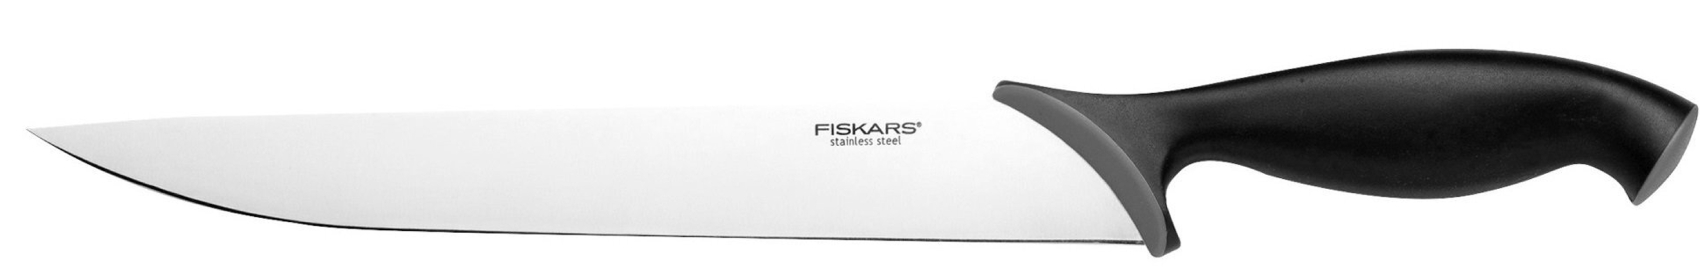 Нож для мяса FISKARS Special Edition 21 см (1062925) в Киеве